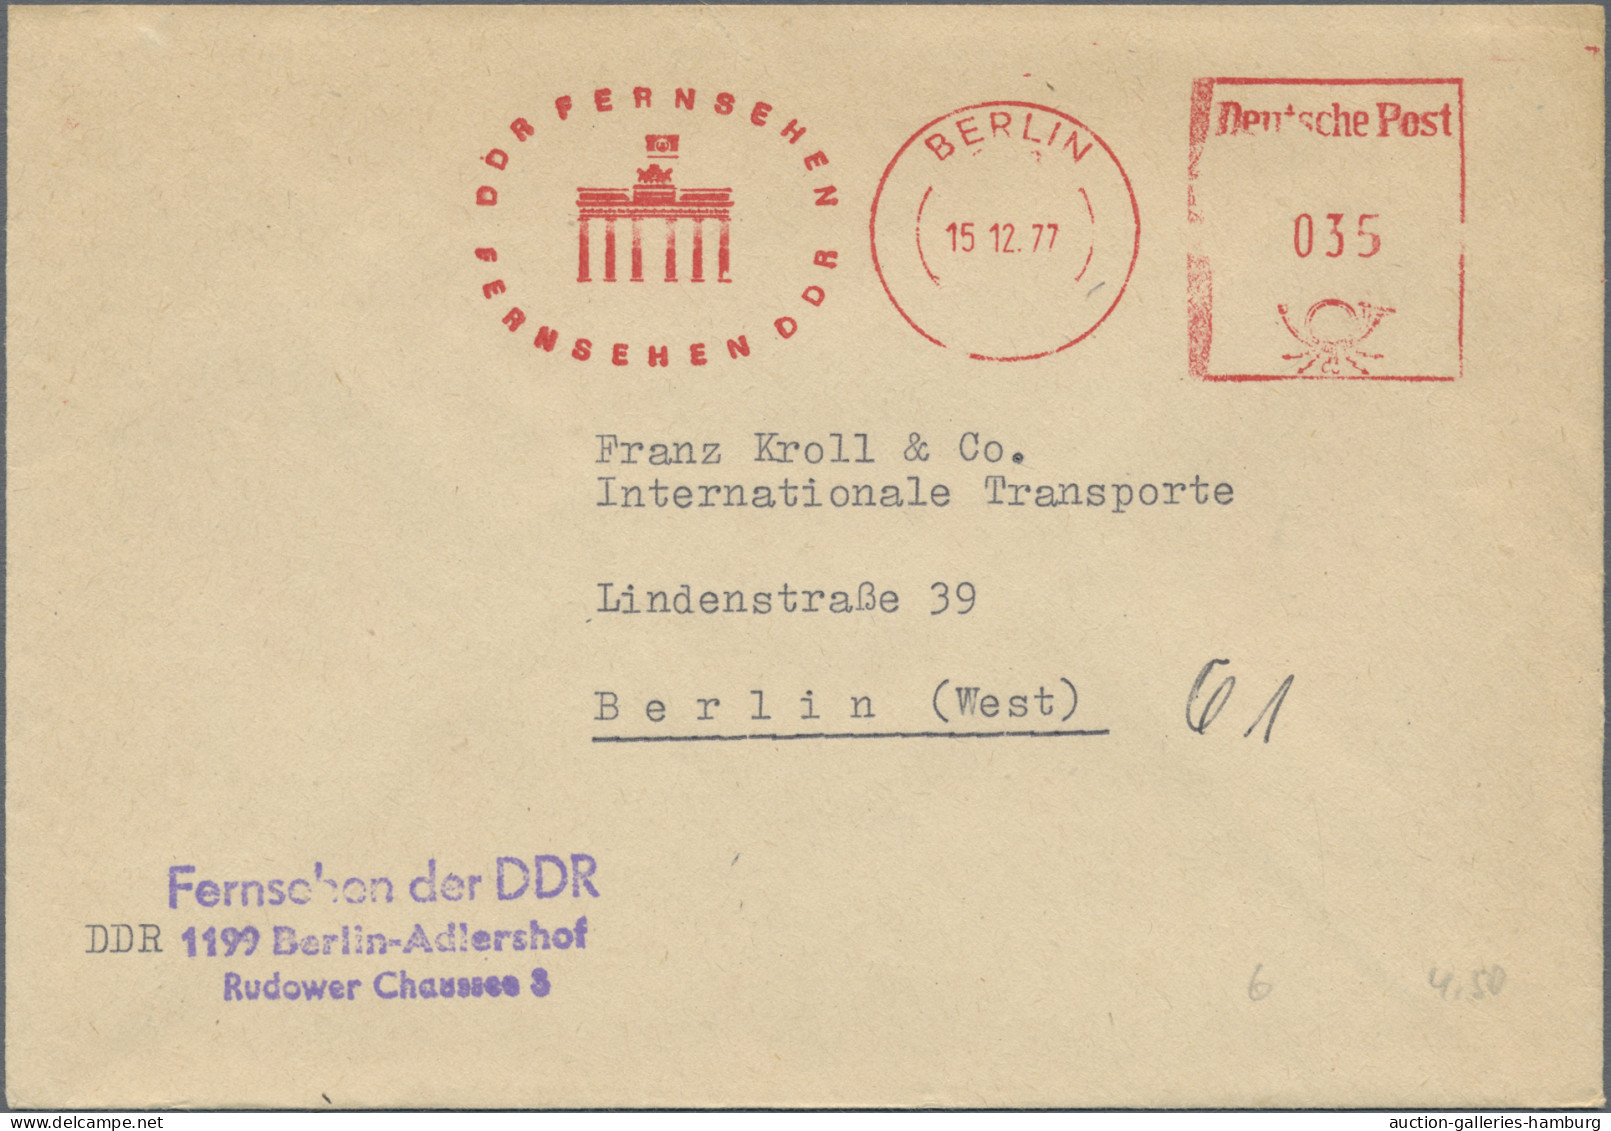 Thematics: buildings-Brandenburg Gate: 1927/1987, umfangreicher Sammlungsbestand